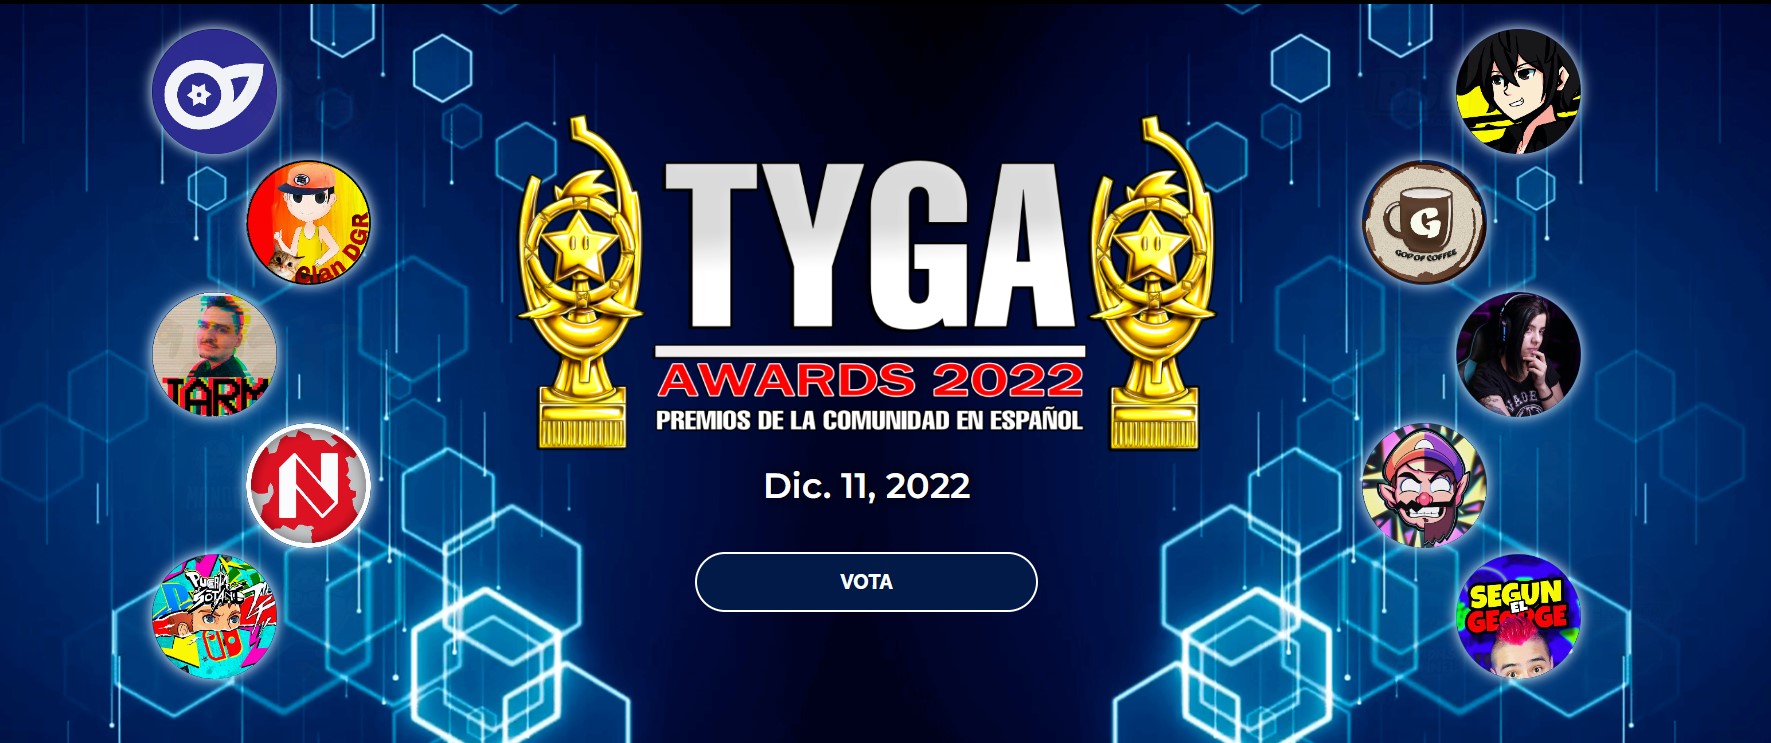 TYGA AWARDS 2022: NOMINACIONES Y VOTACIÓN